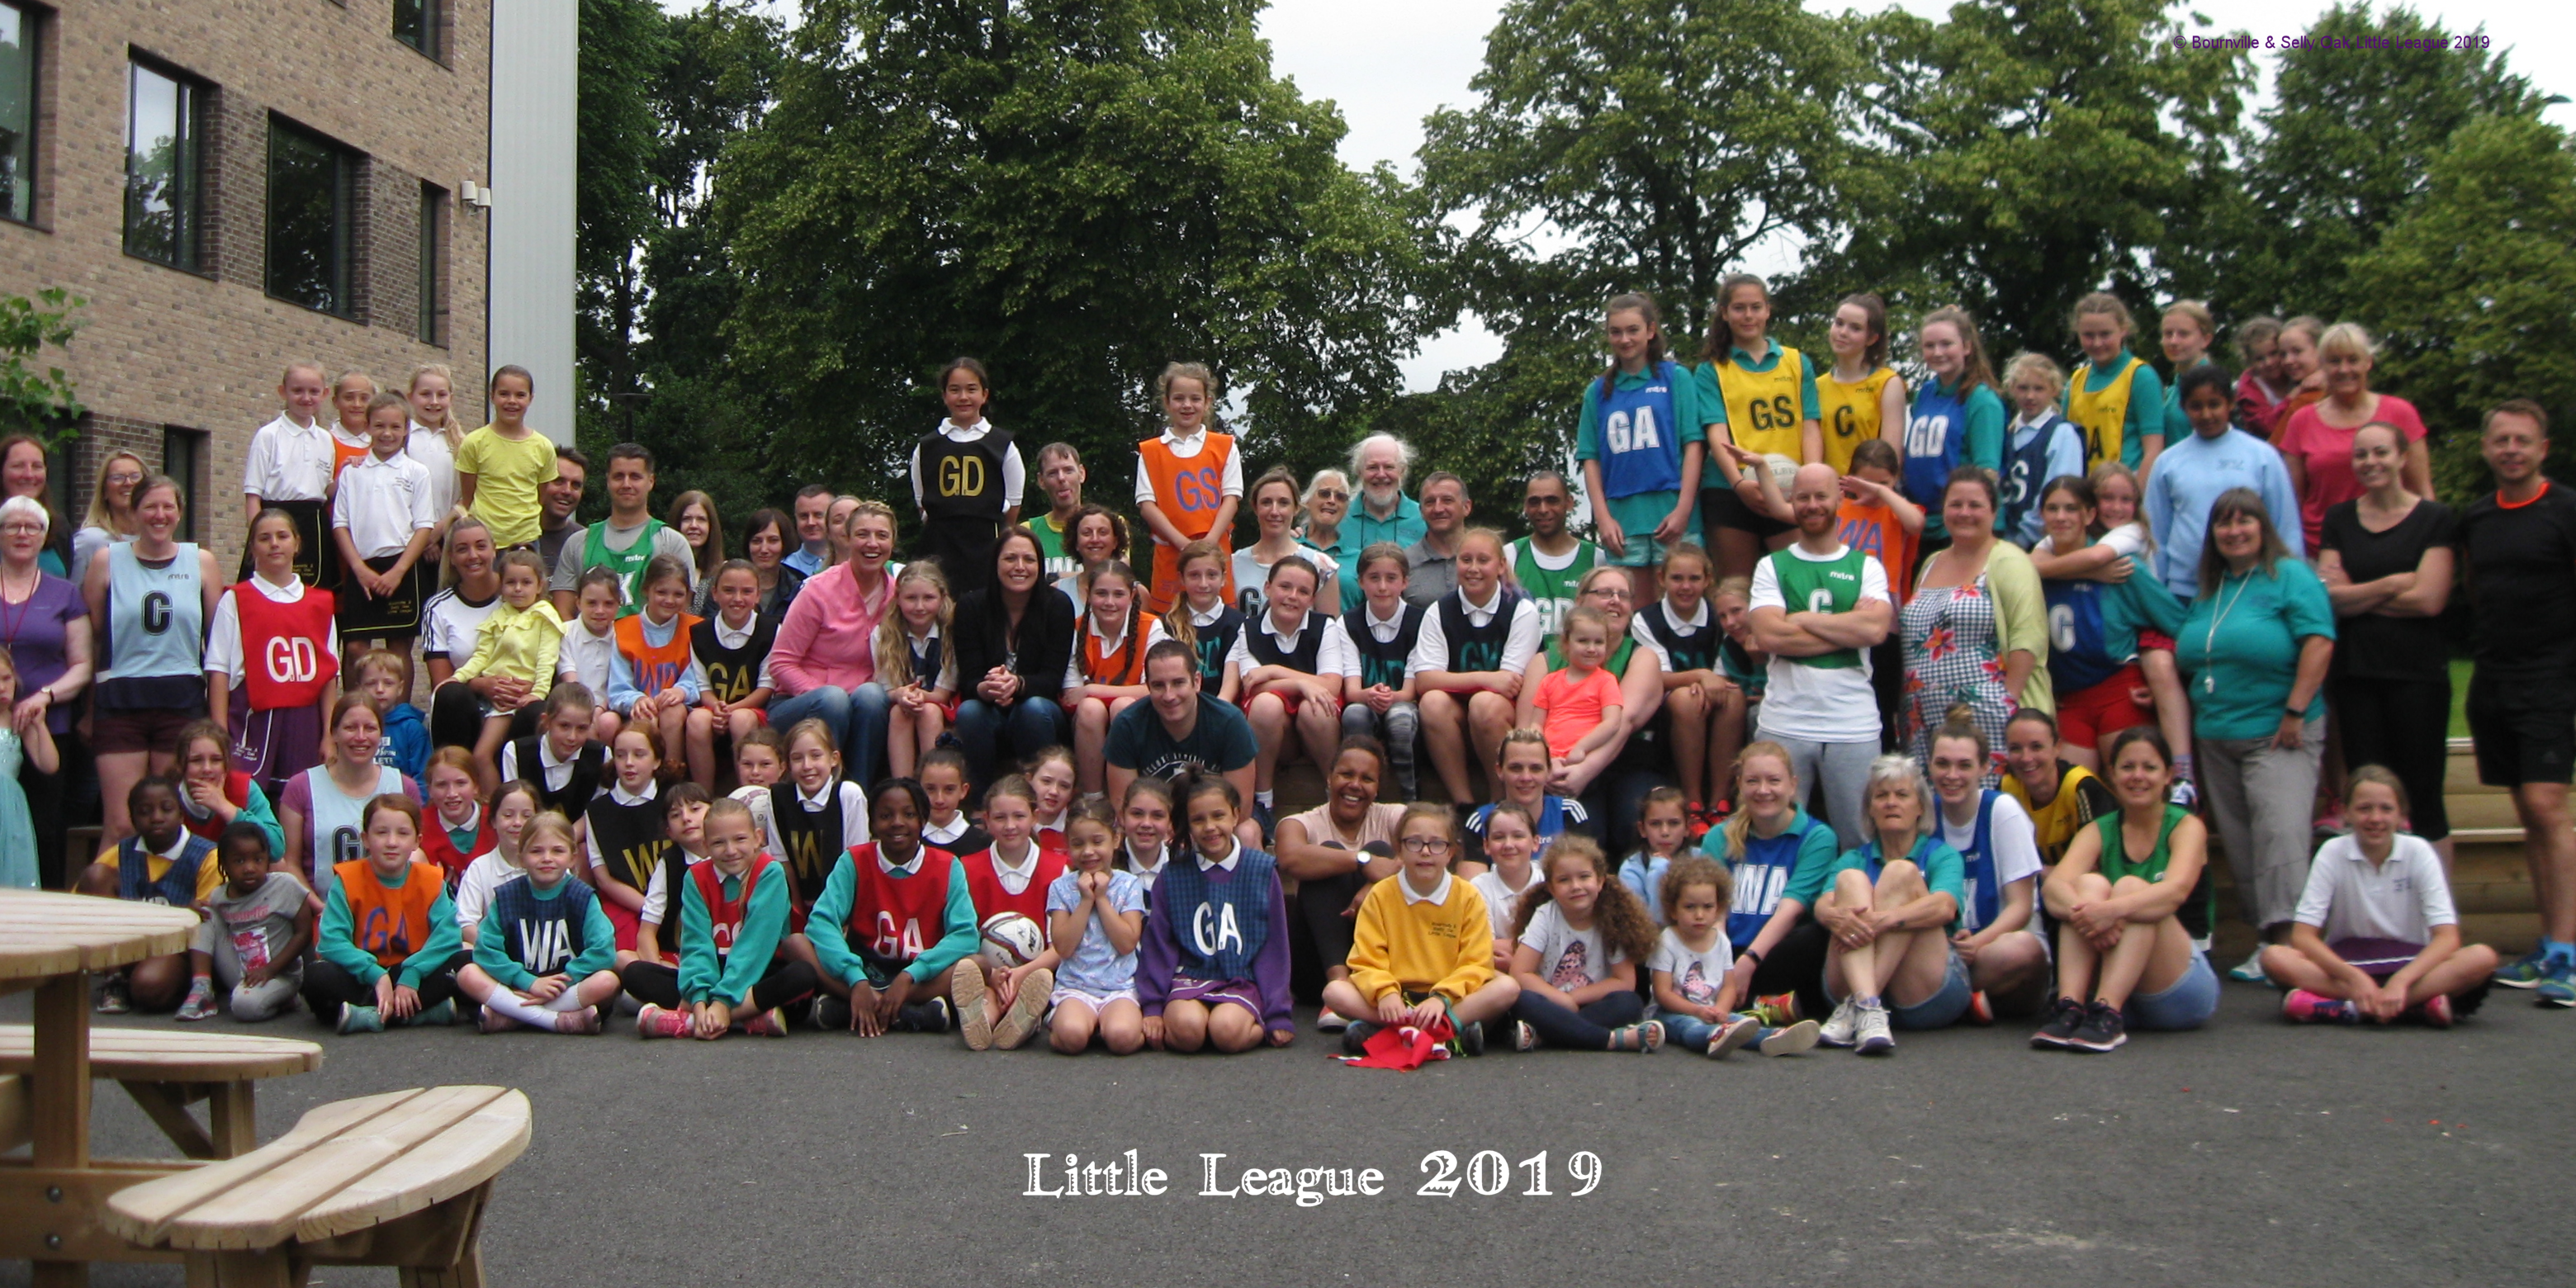 Little League Group Photo 2019